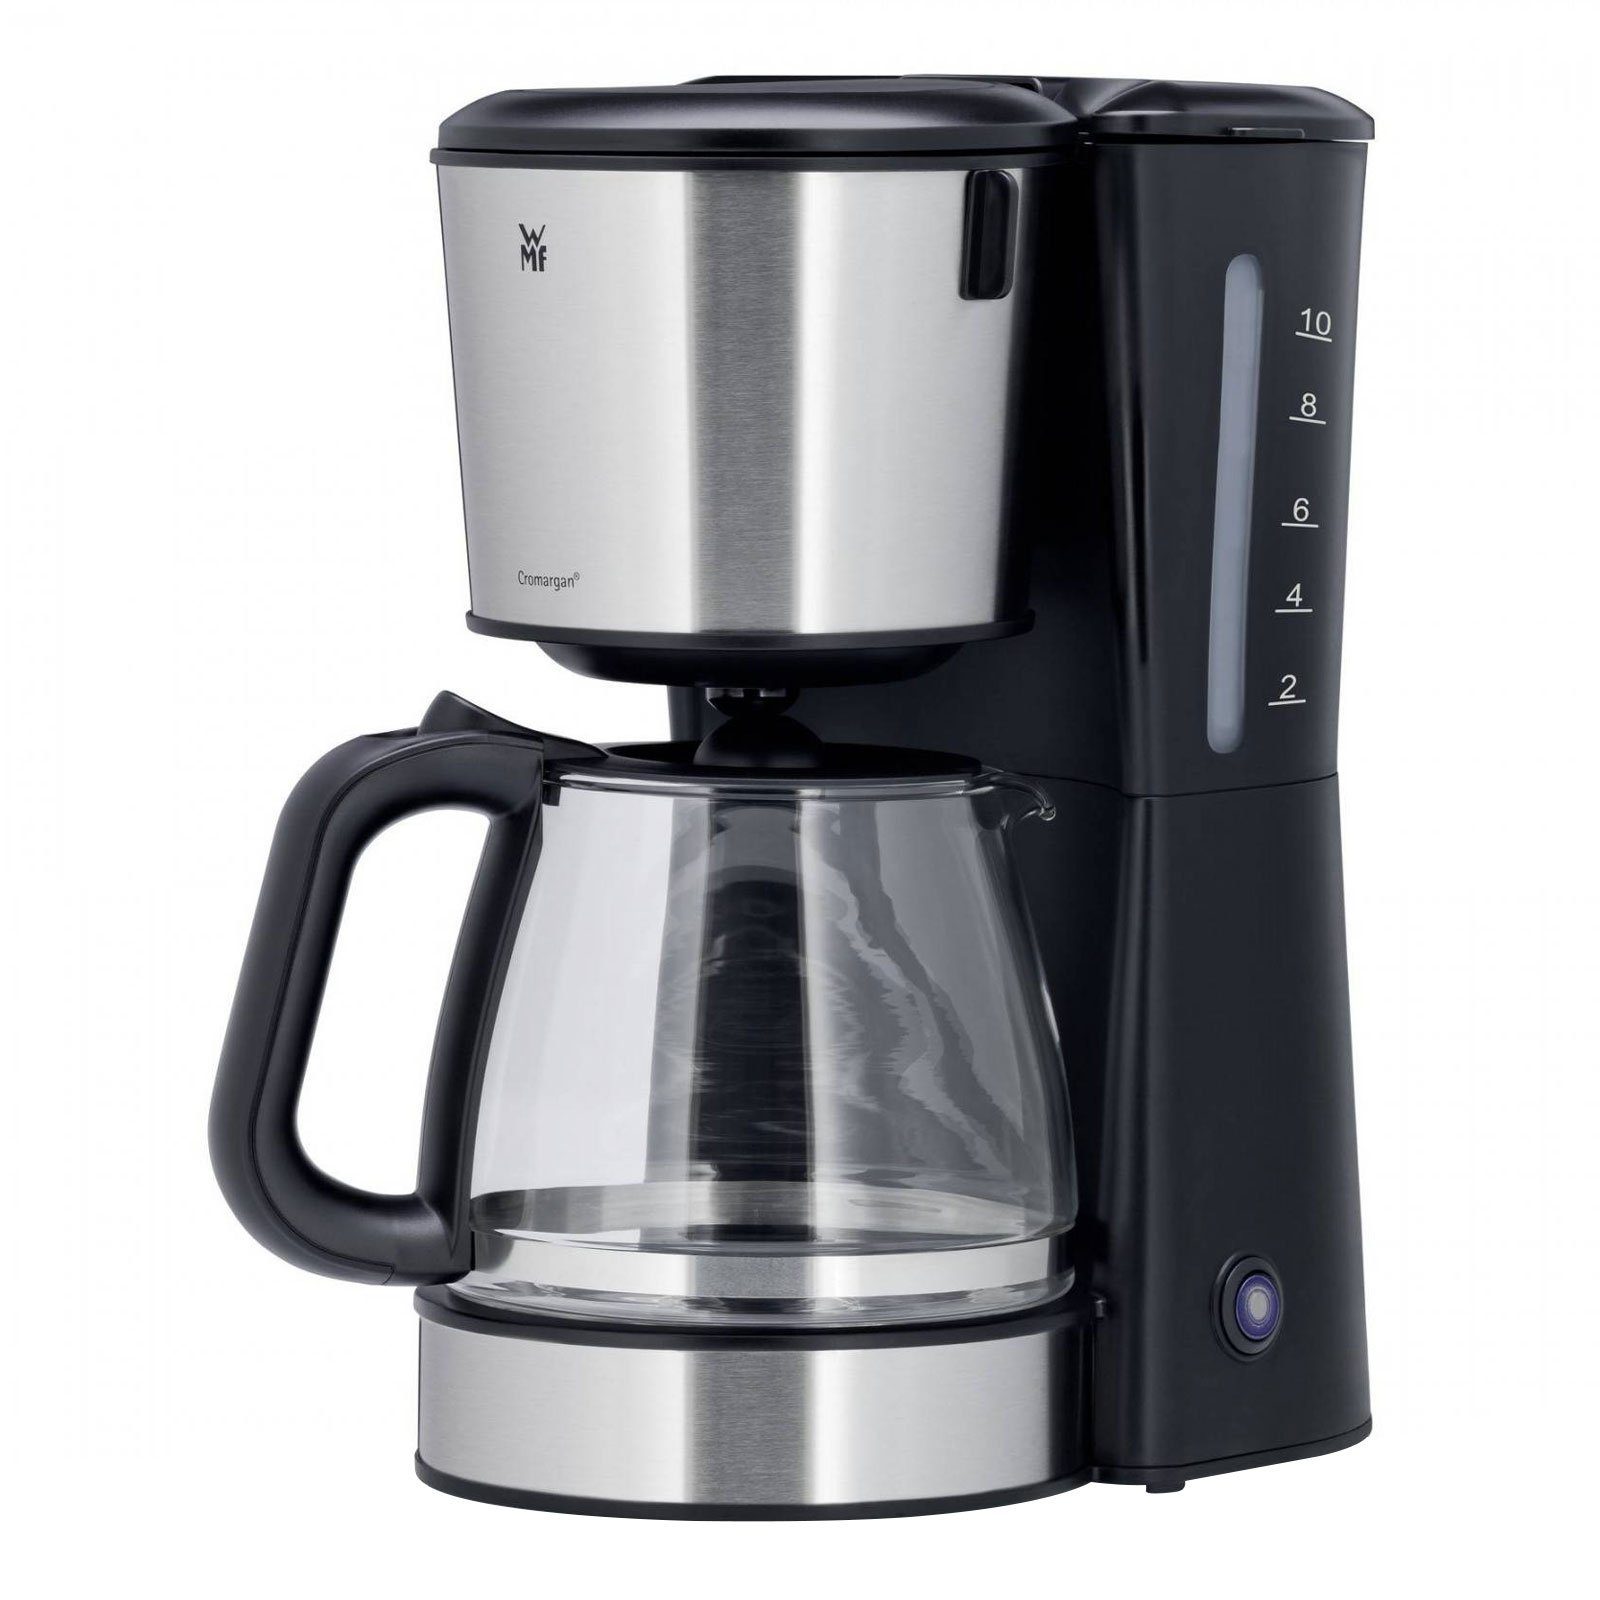 WMF Filterkaffeemaschine Bueno Pro (10 Tassen, Cromargan, Glaskanne,  Schwenkfilter, 1x4, Abschalt-Automatik, Warmhalte-Platte,  Wasserstands-Anzeige)